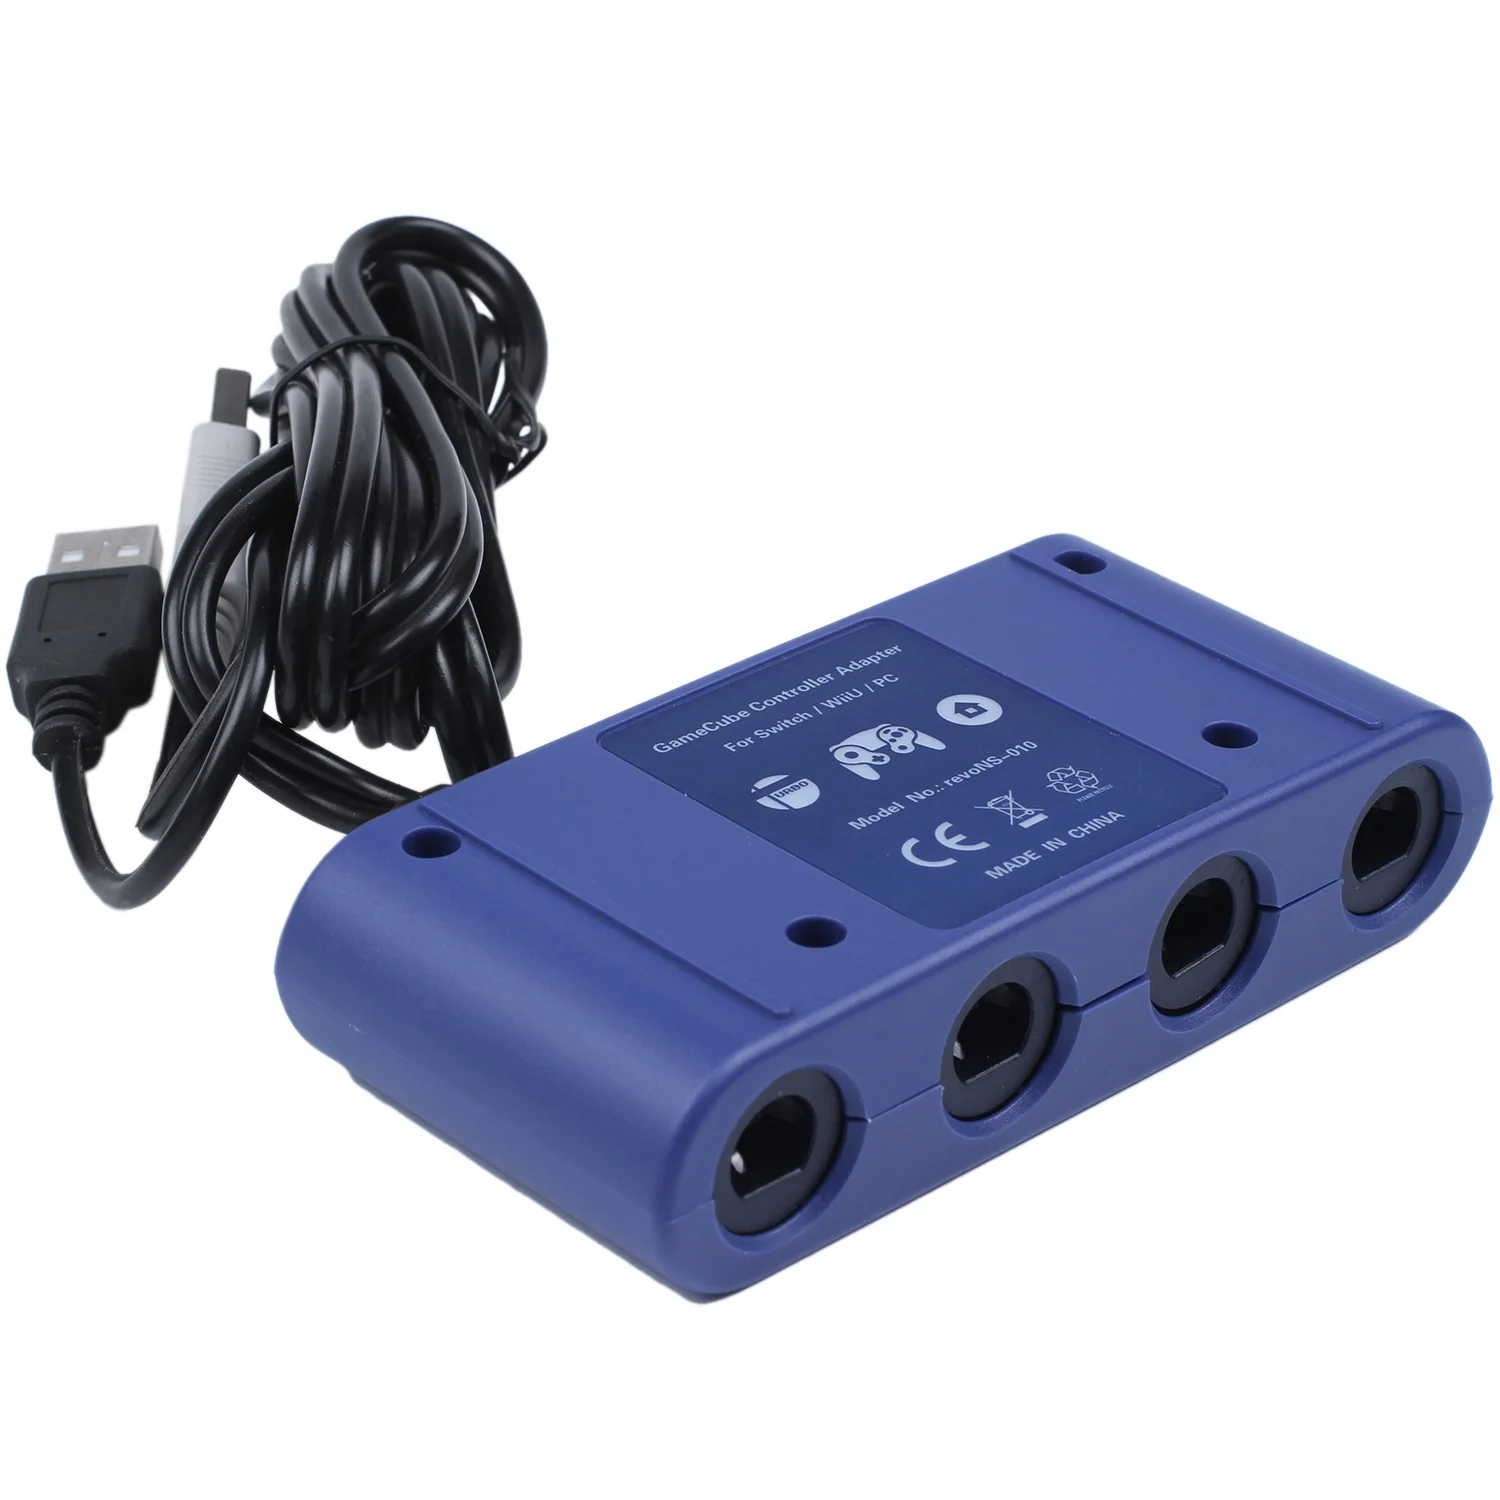 Gamecube vezérlő adapterhez Nintendo Switch Wii U PC 4 portokhoz Turbo és Home gomb móddal Nincs illesztőprogram - 1